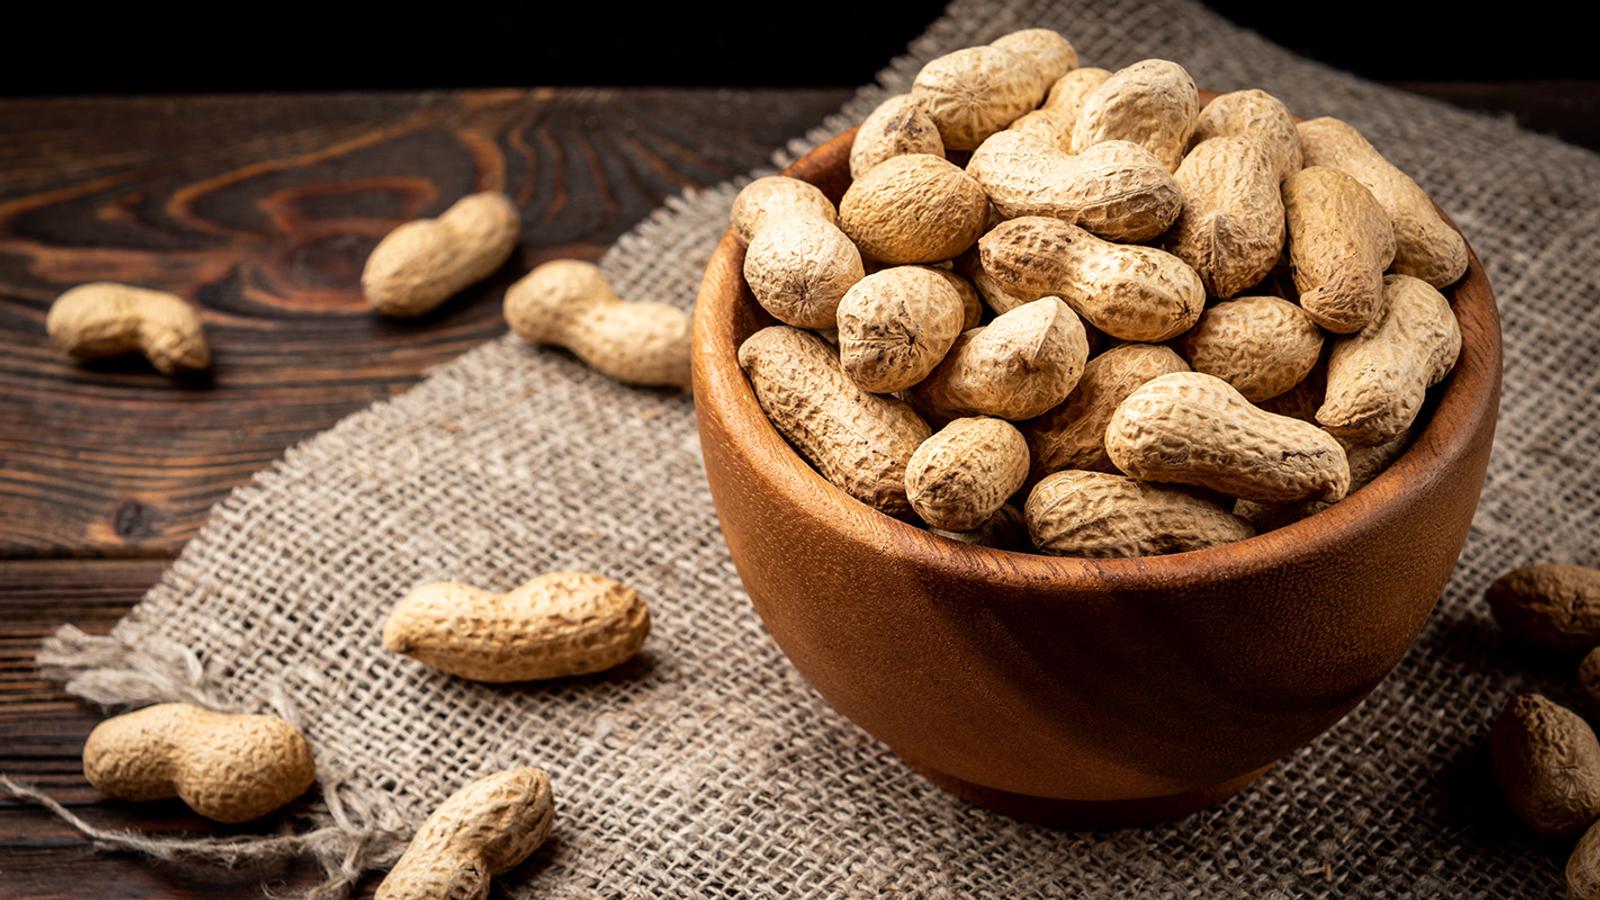 Häufige Nahrungsmittelallergie: Allergie gegen Erdnüsse